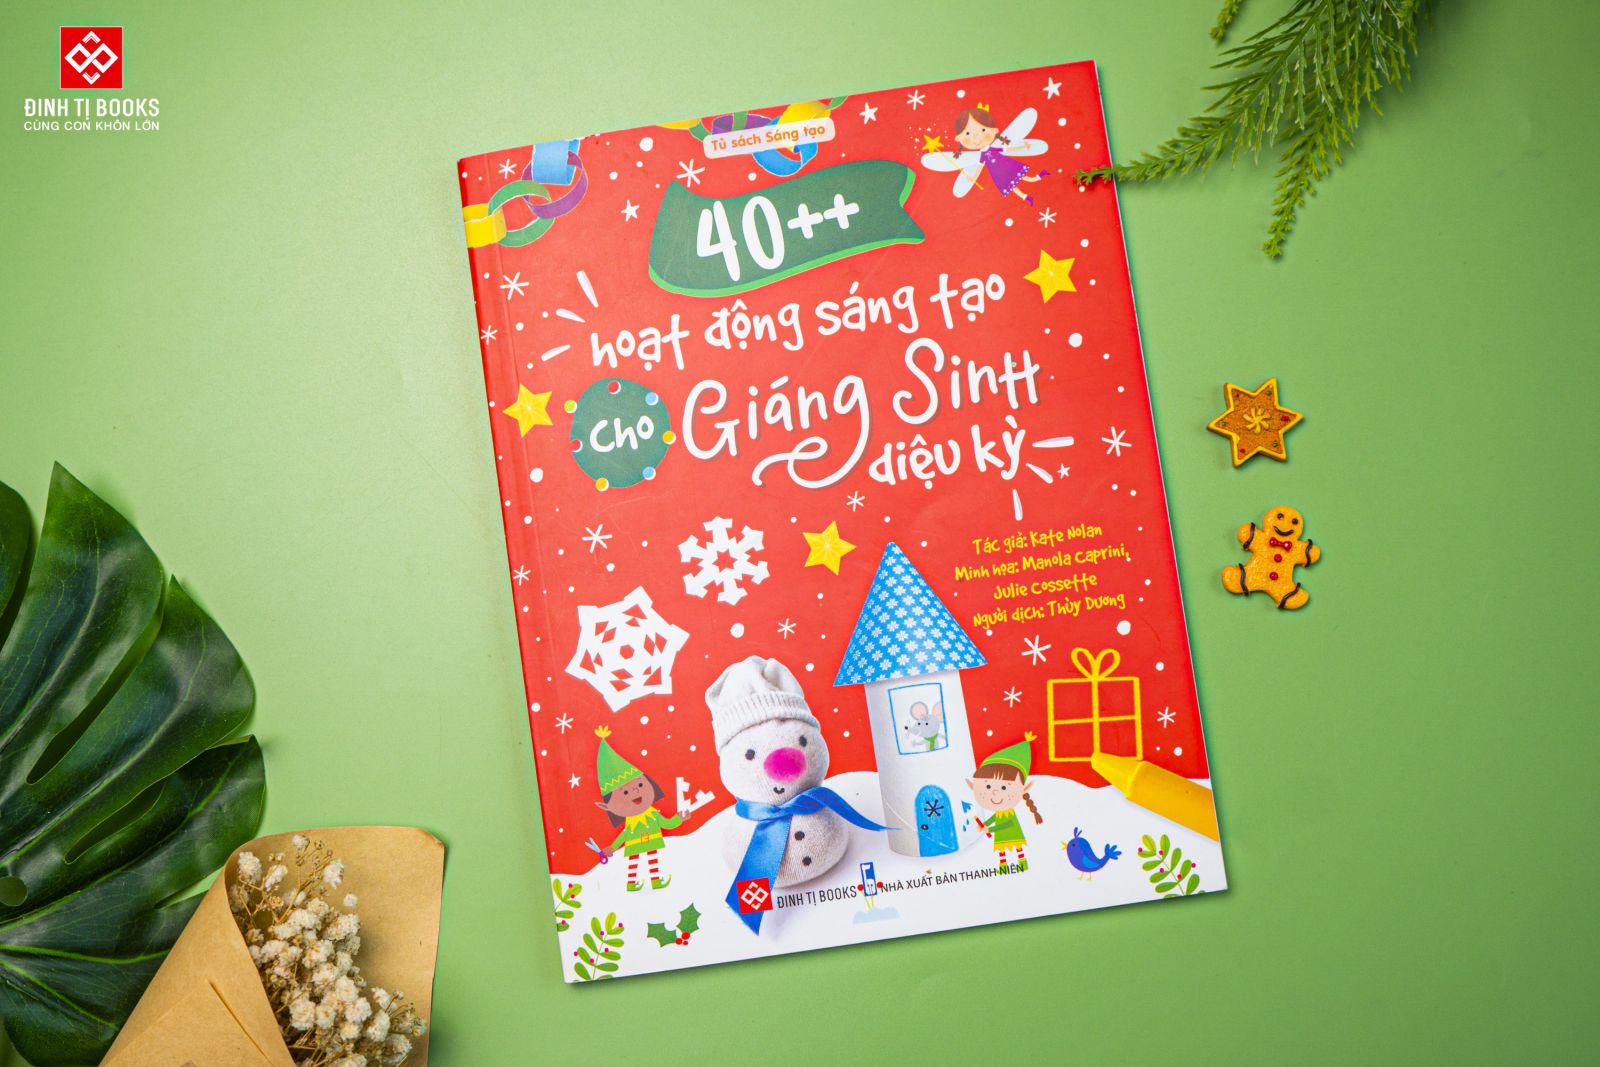 Sách 40++ Hoạt Động Sáng Tạo Cho Giáng Sinh Diệu Kỳ cho bé từ 3 tuổi - Đinh Tị Books